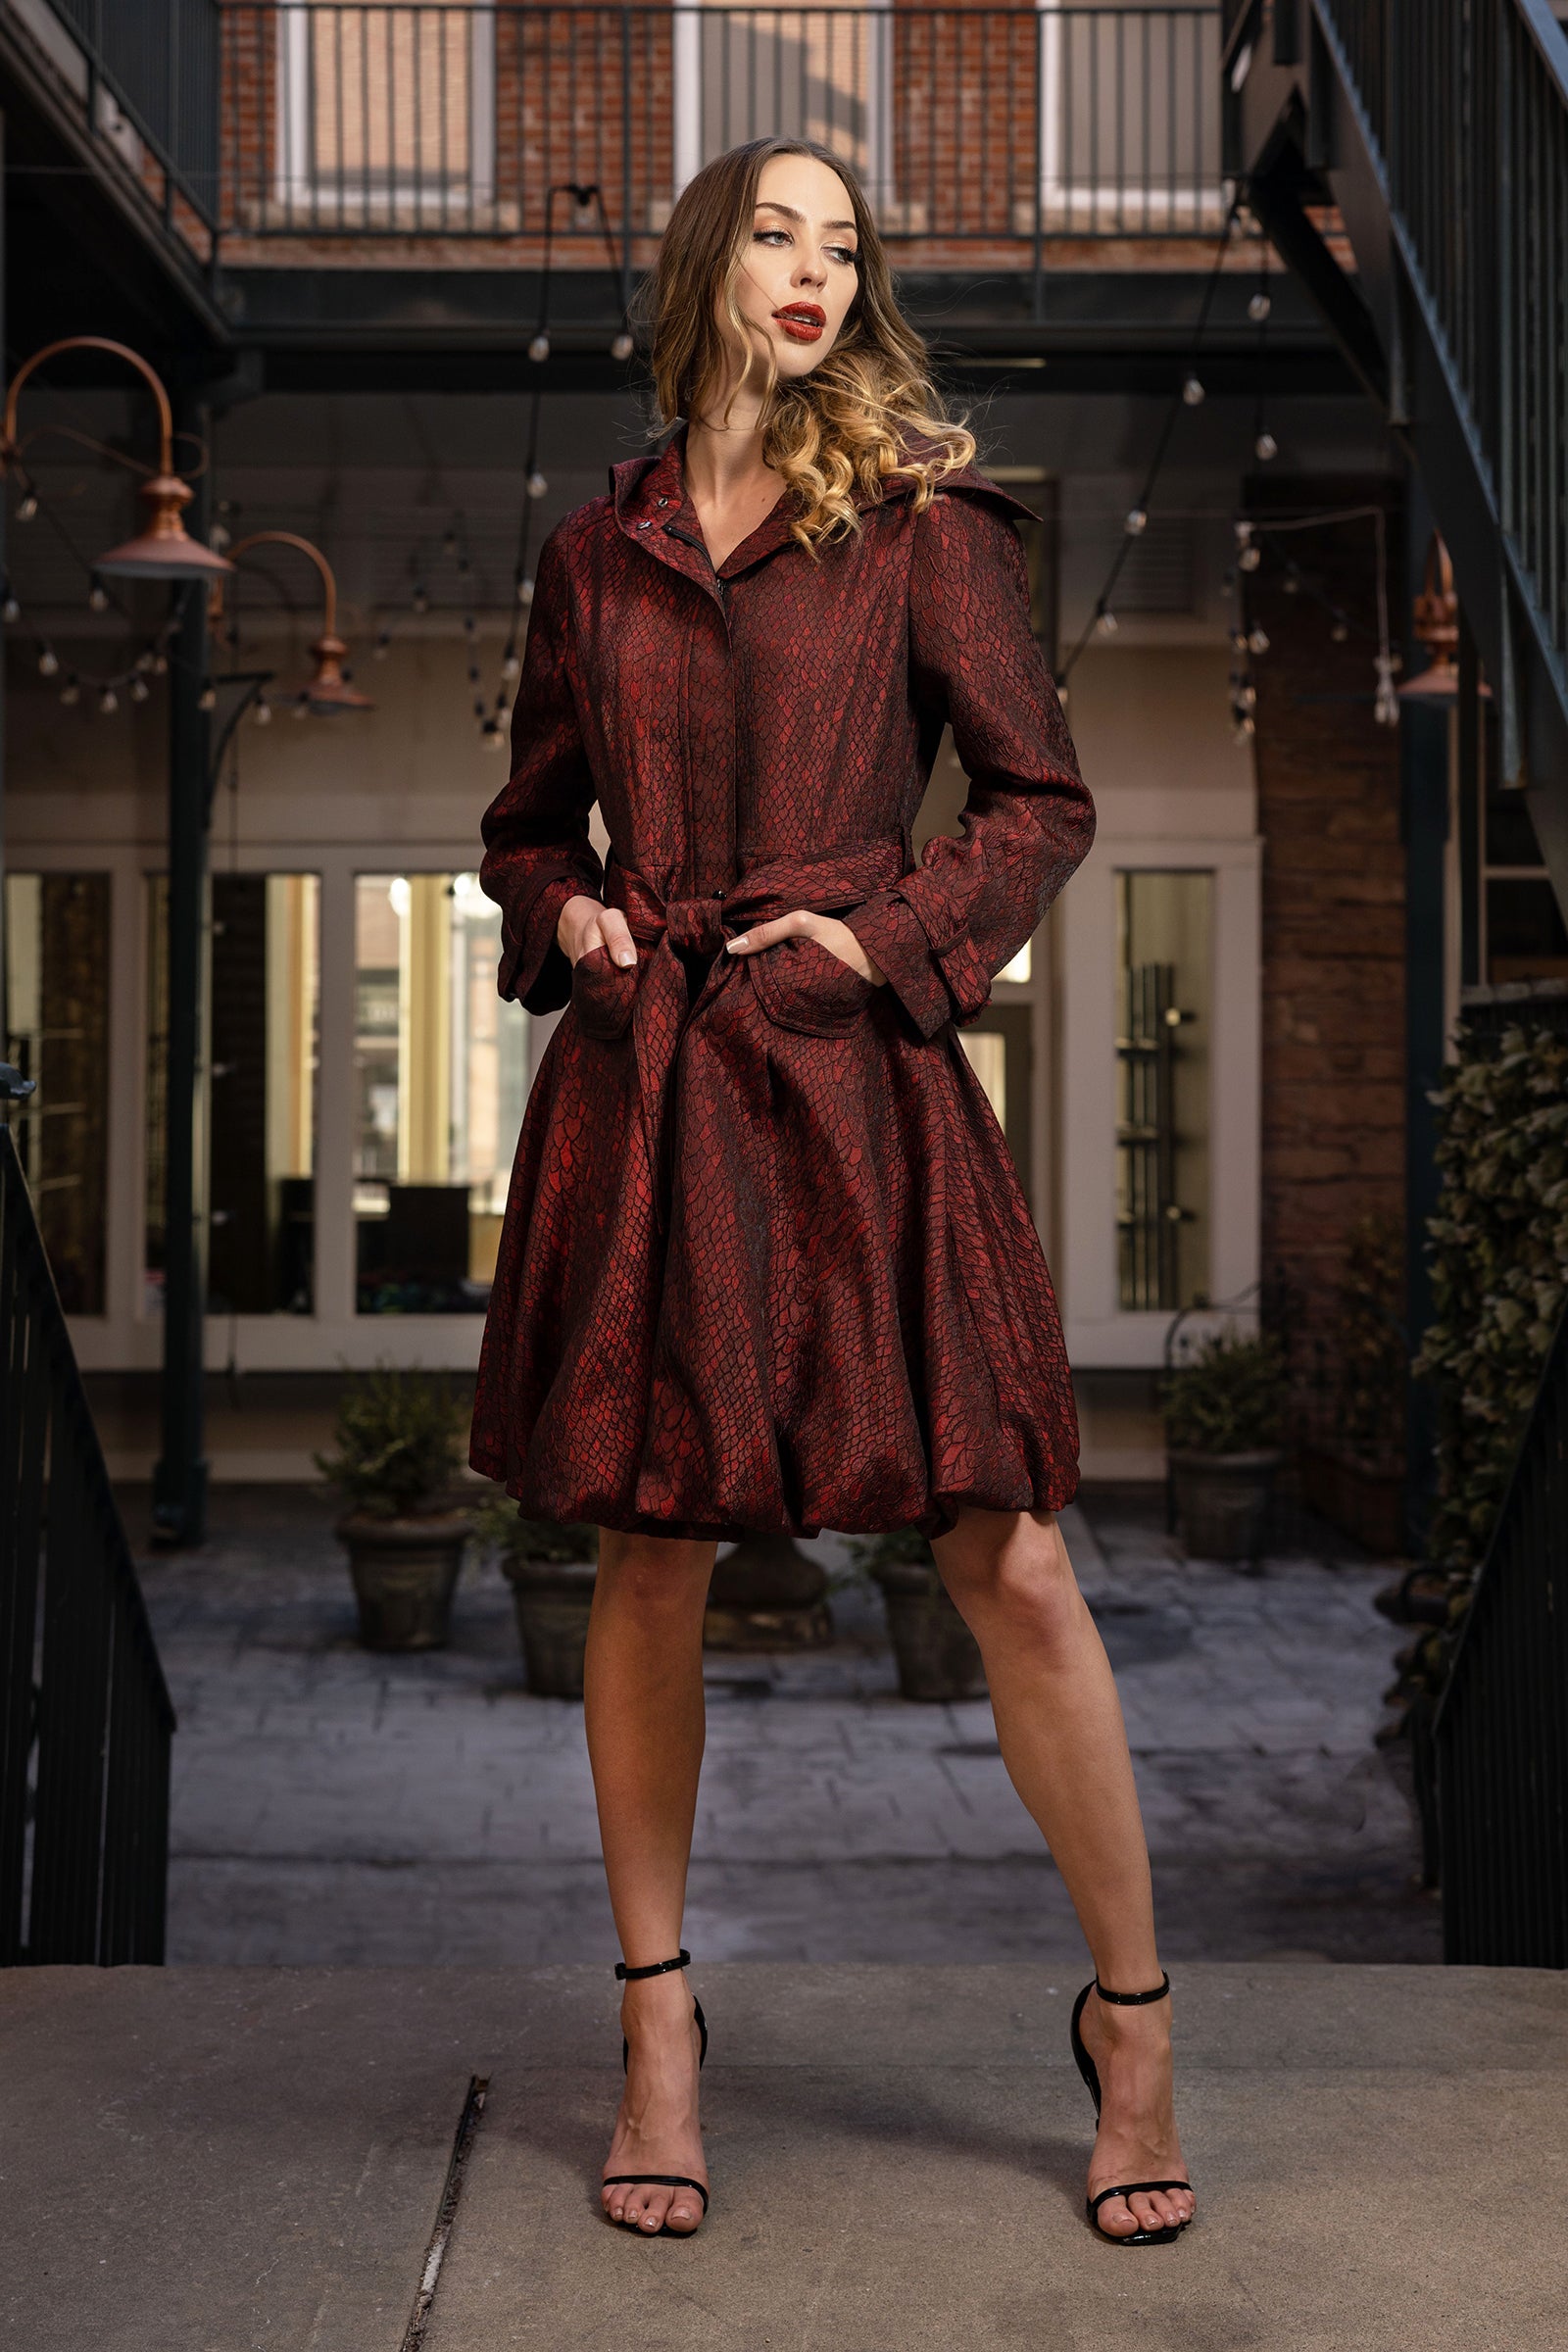 Jacquard Bubble Coat Dress - CARINE